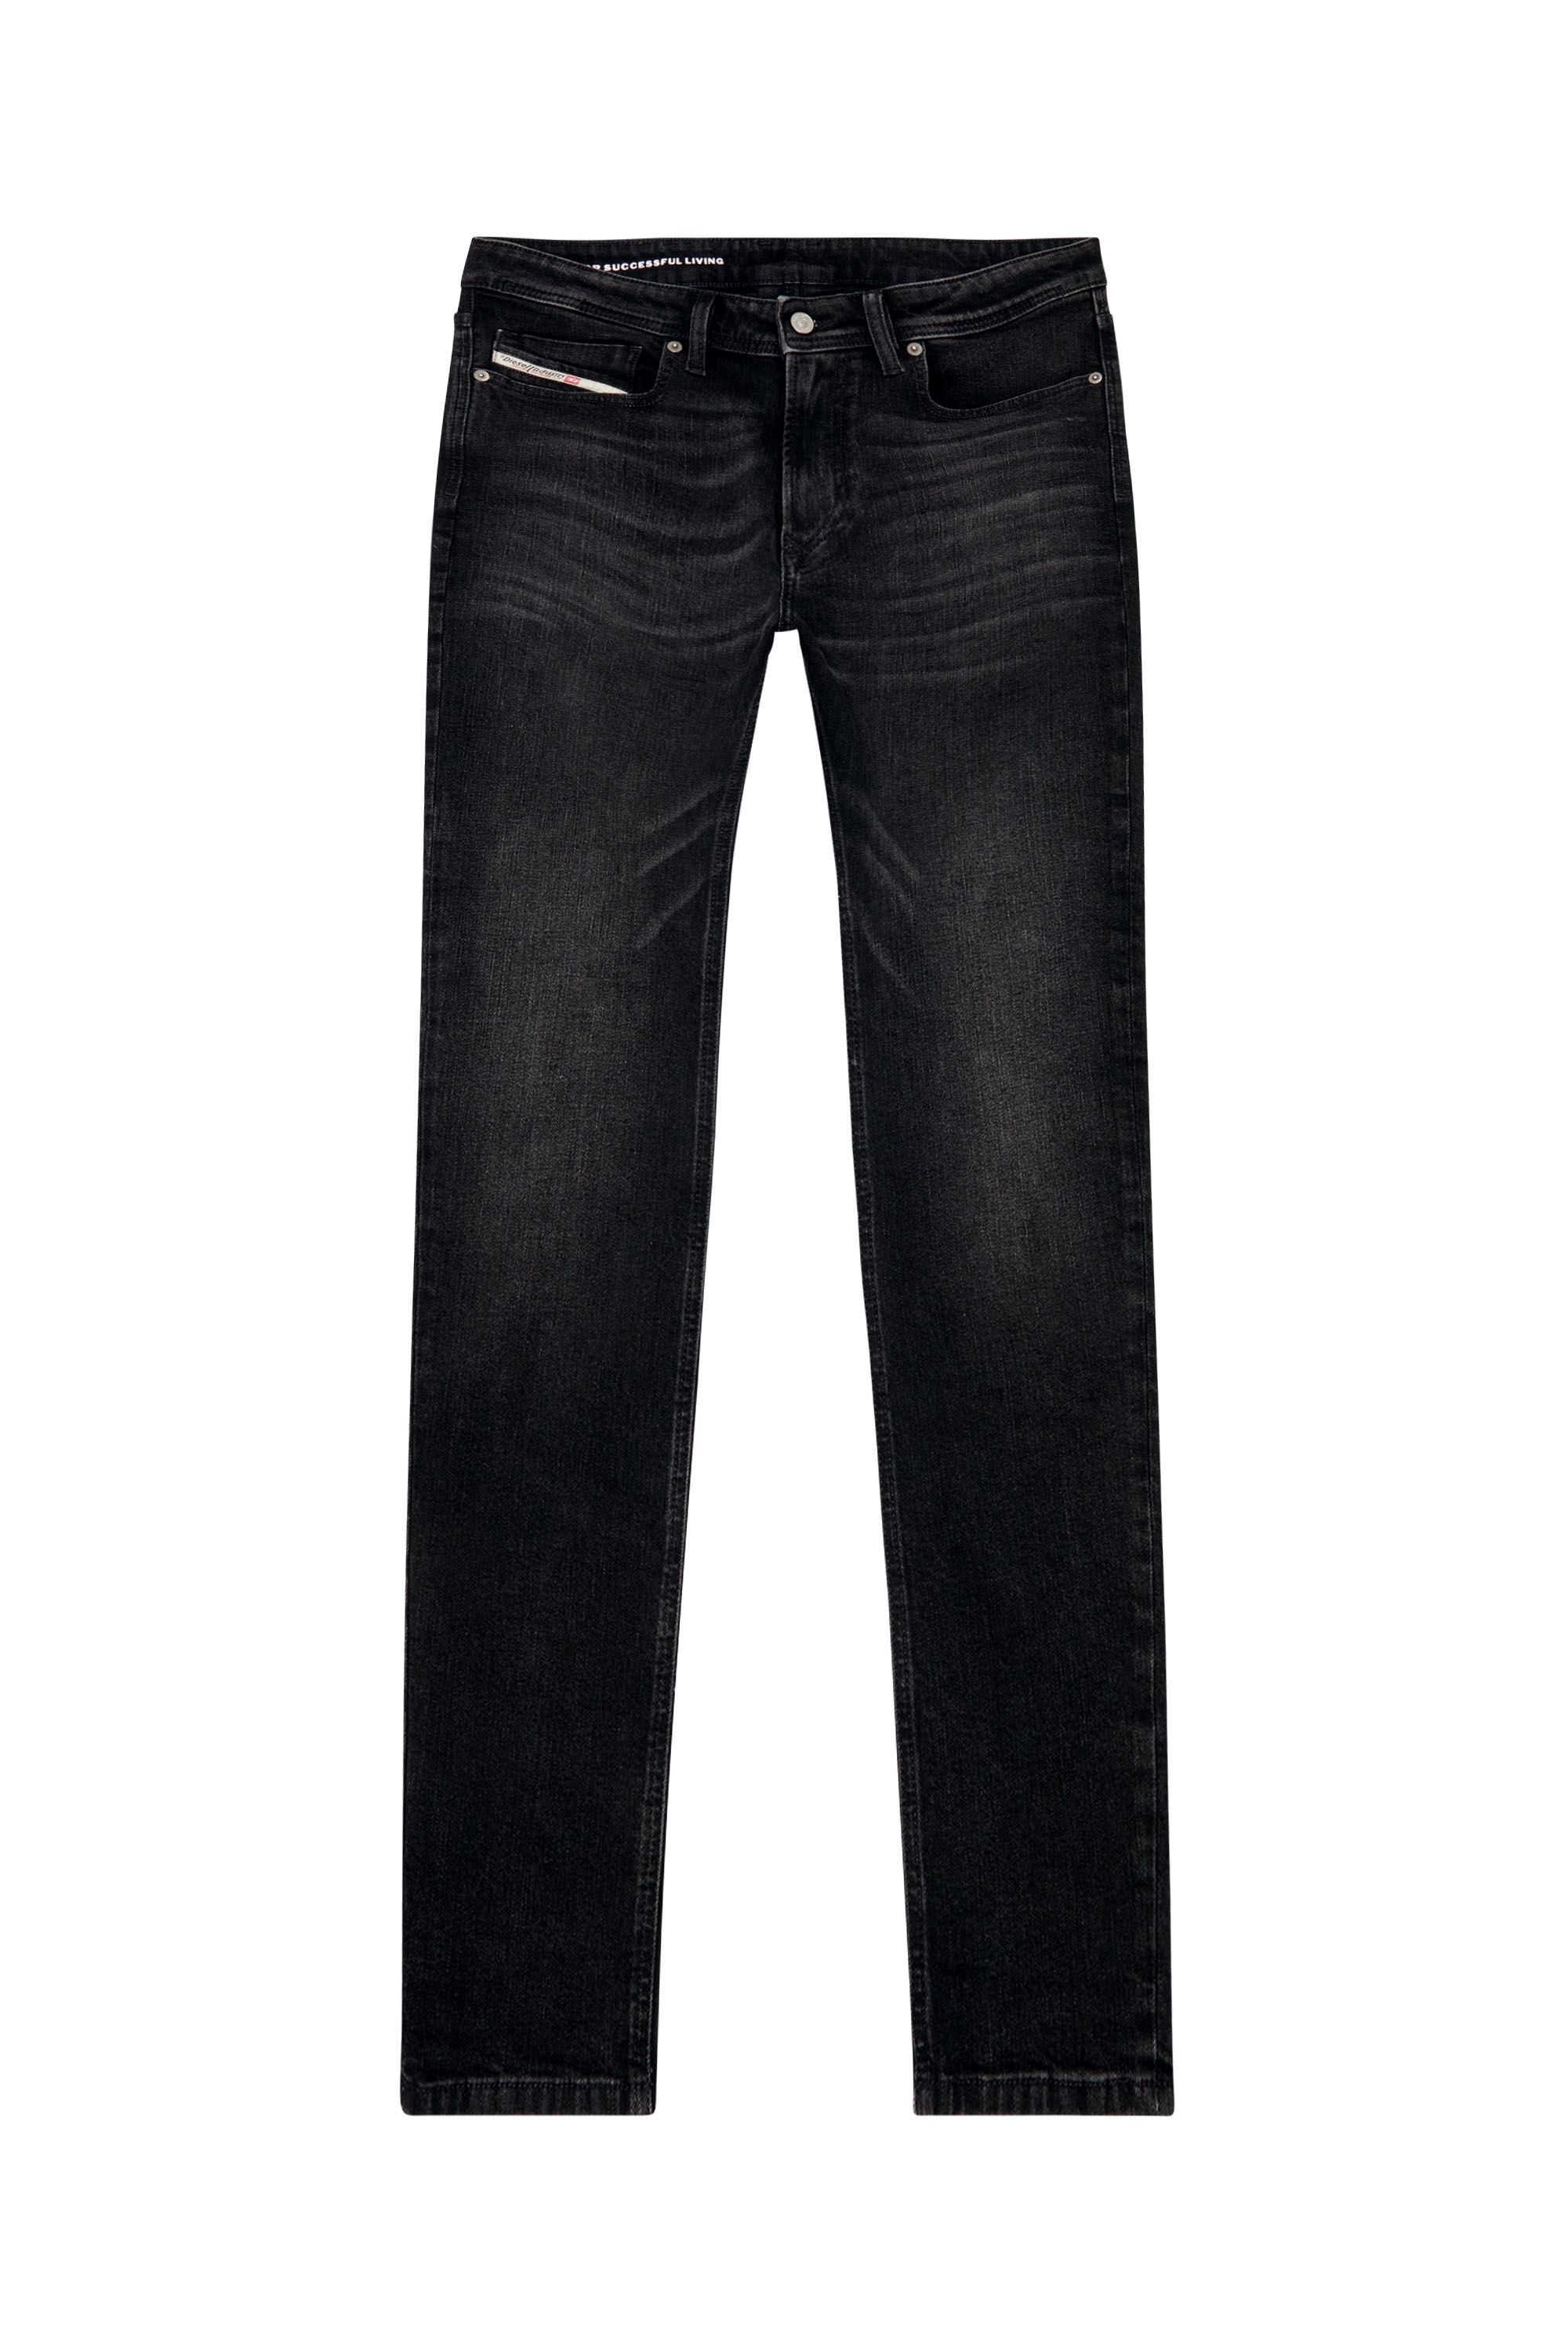 Diesel - Skinny Jeans 1979 Sleenker 0GRDA, Black/Dark grey - Image 2